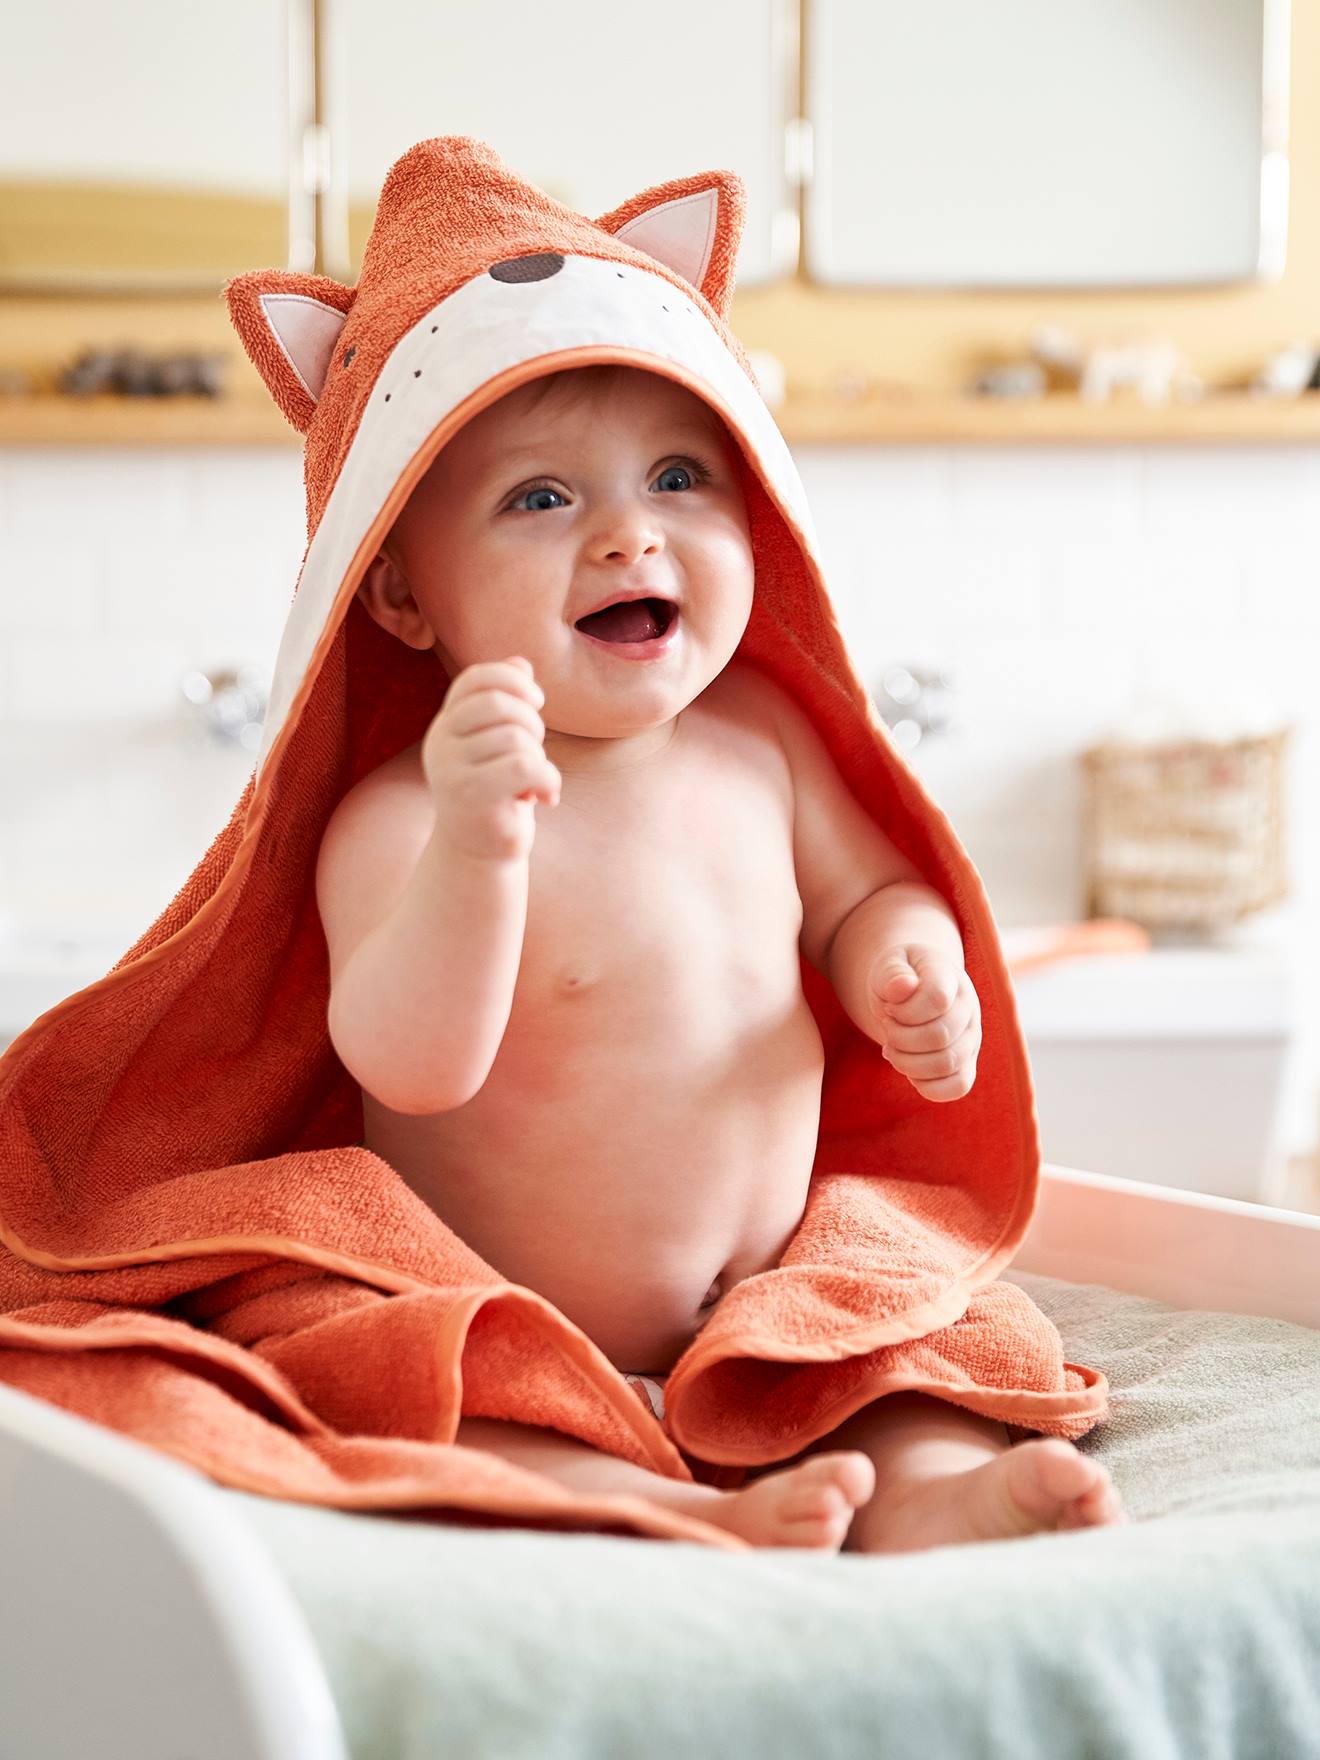 Badetuch Kinder Handtuch Kapuzenbadetuch Ein tolles Geschenk Baby Badetuch 